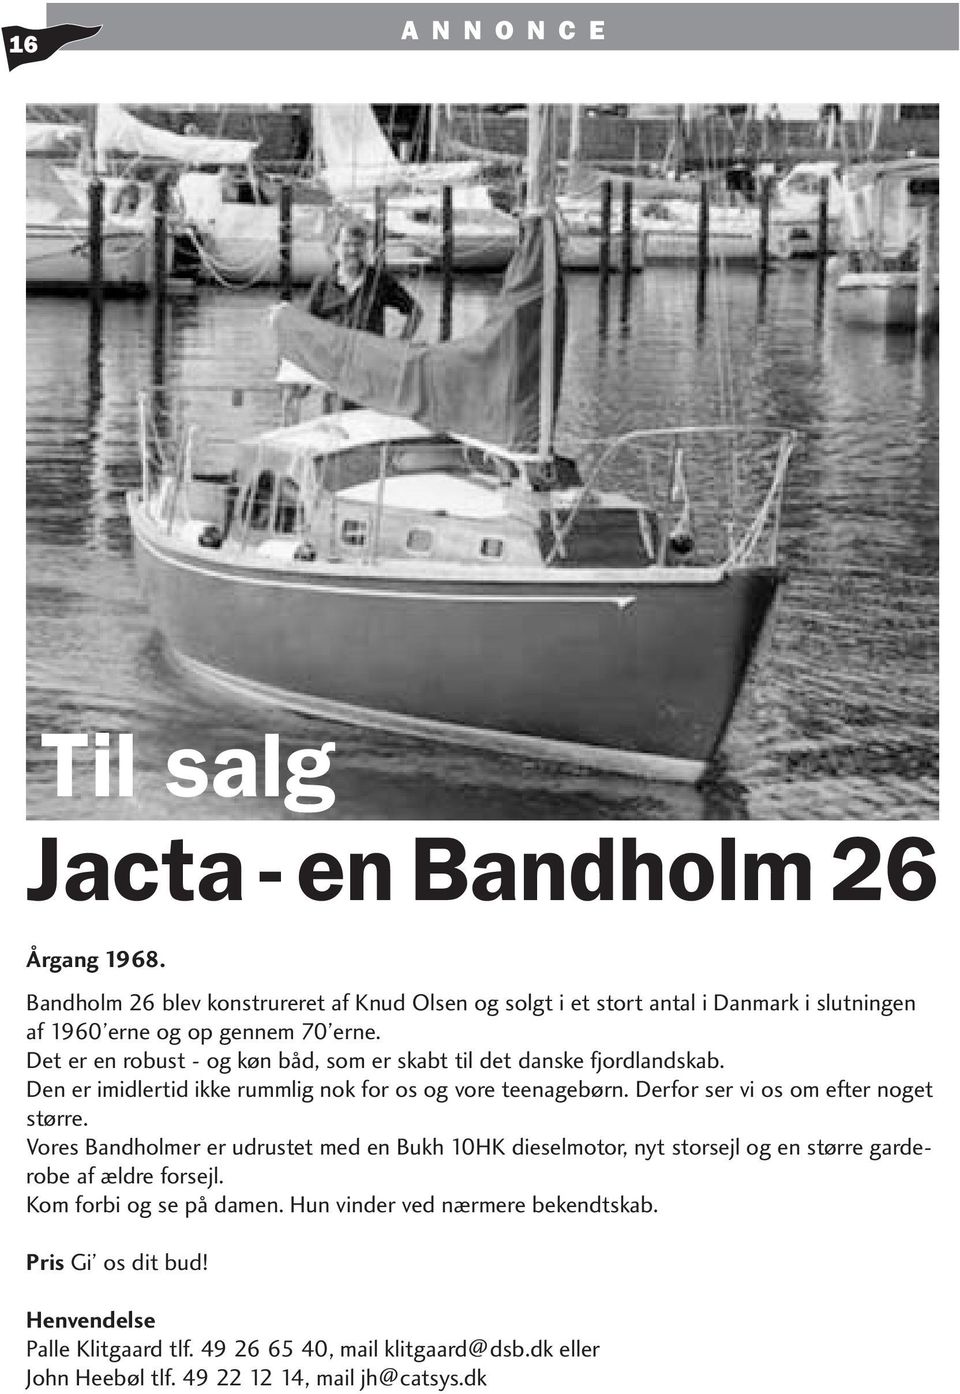 Det er en robust - og køn båd, som er skabt til det danske fjordlandskab. Den er imidlertid ikke rummlig nok for os og vore teenagebørn.